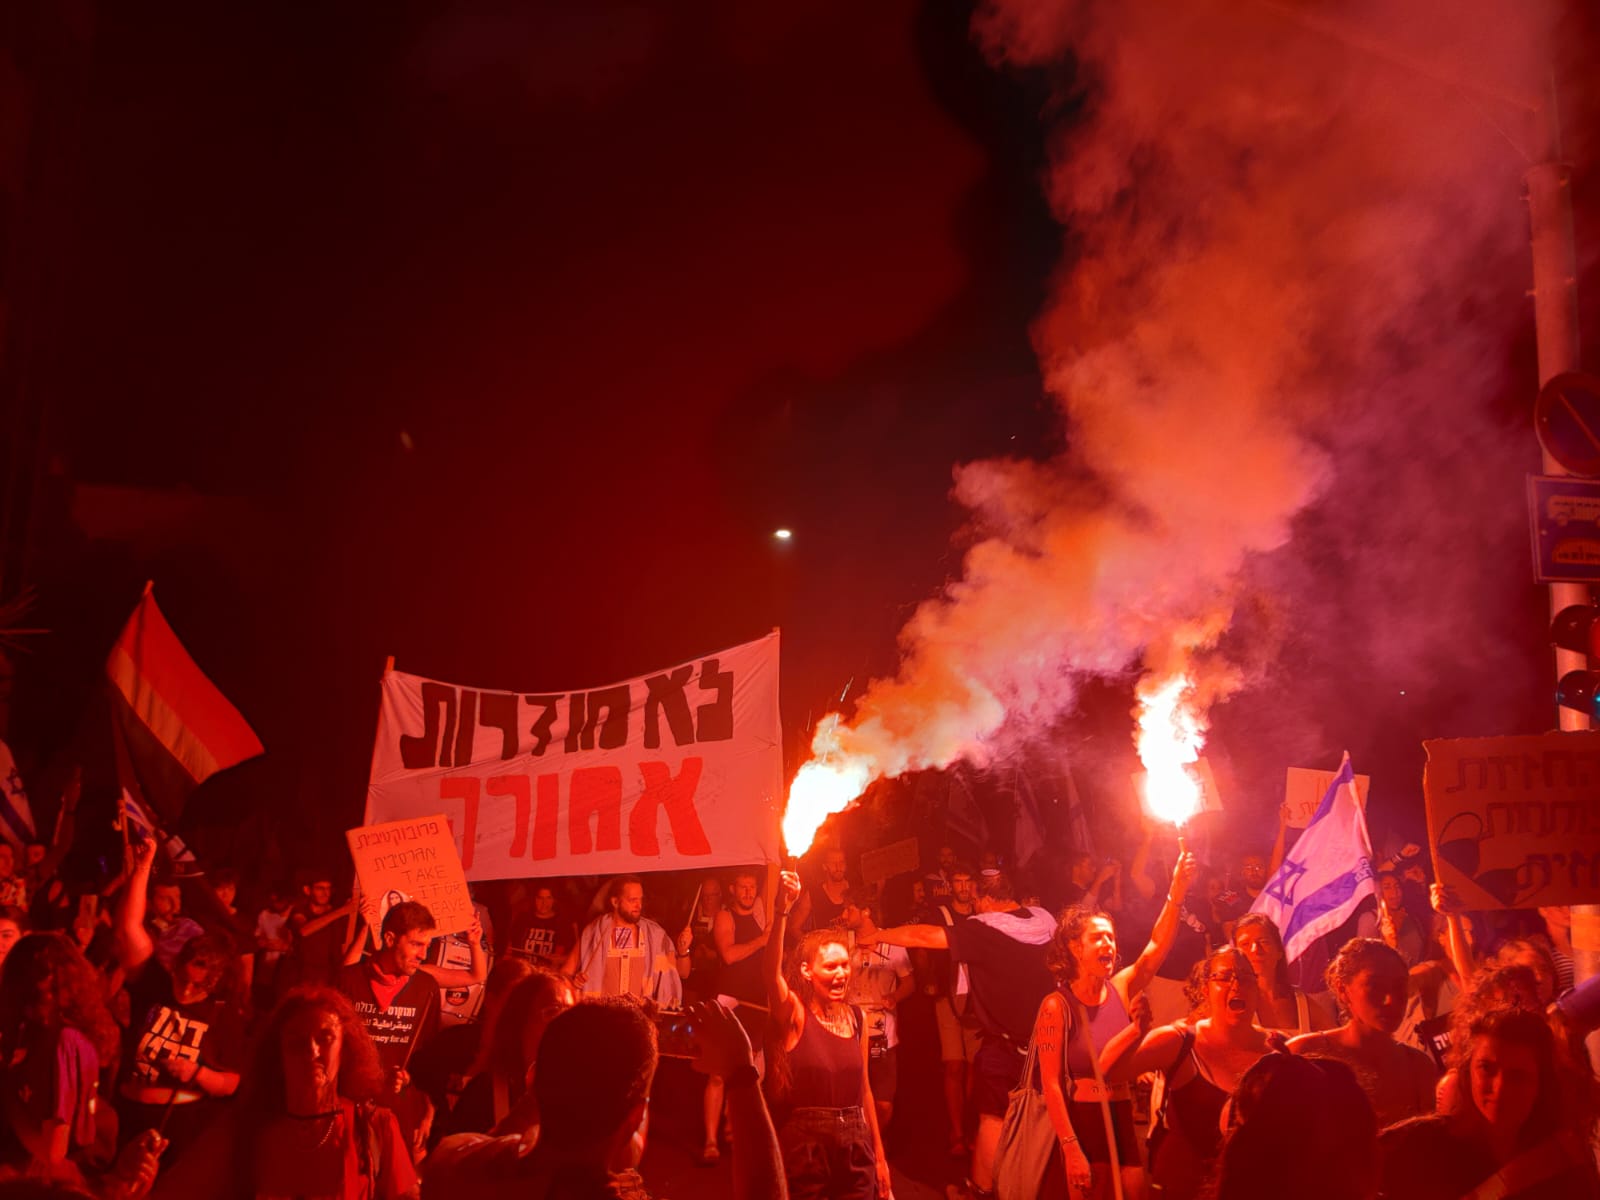 פעילות מחאת הסטודנטים עם אבוקות ושלט &quot;לא חוזרות אחורה&quot; במחאה בכיכר פריז בירושלים (צילום: מחאת הסטודנטים)